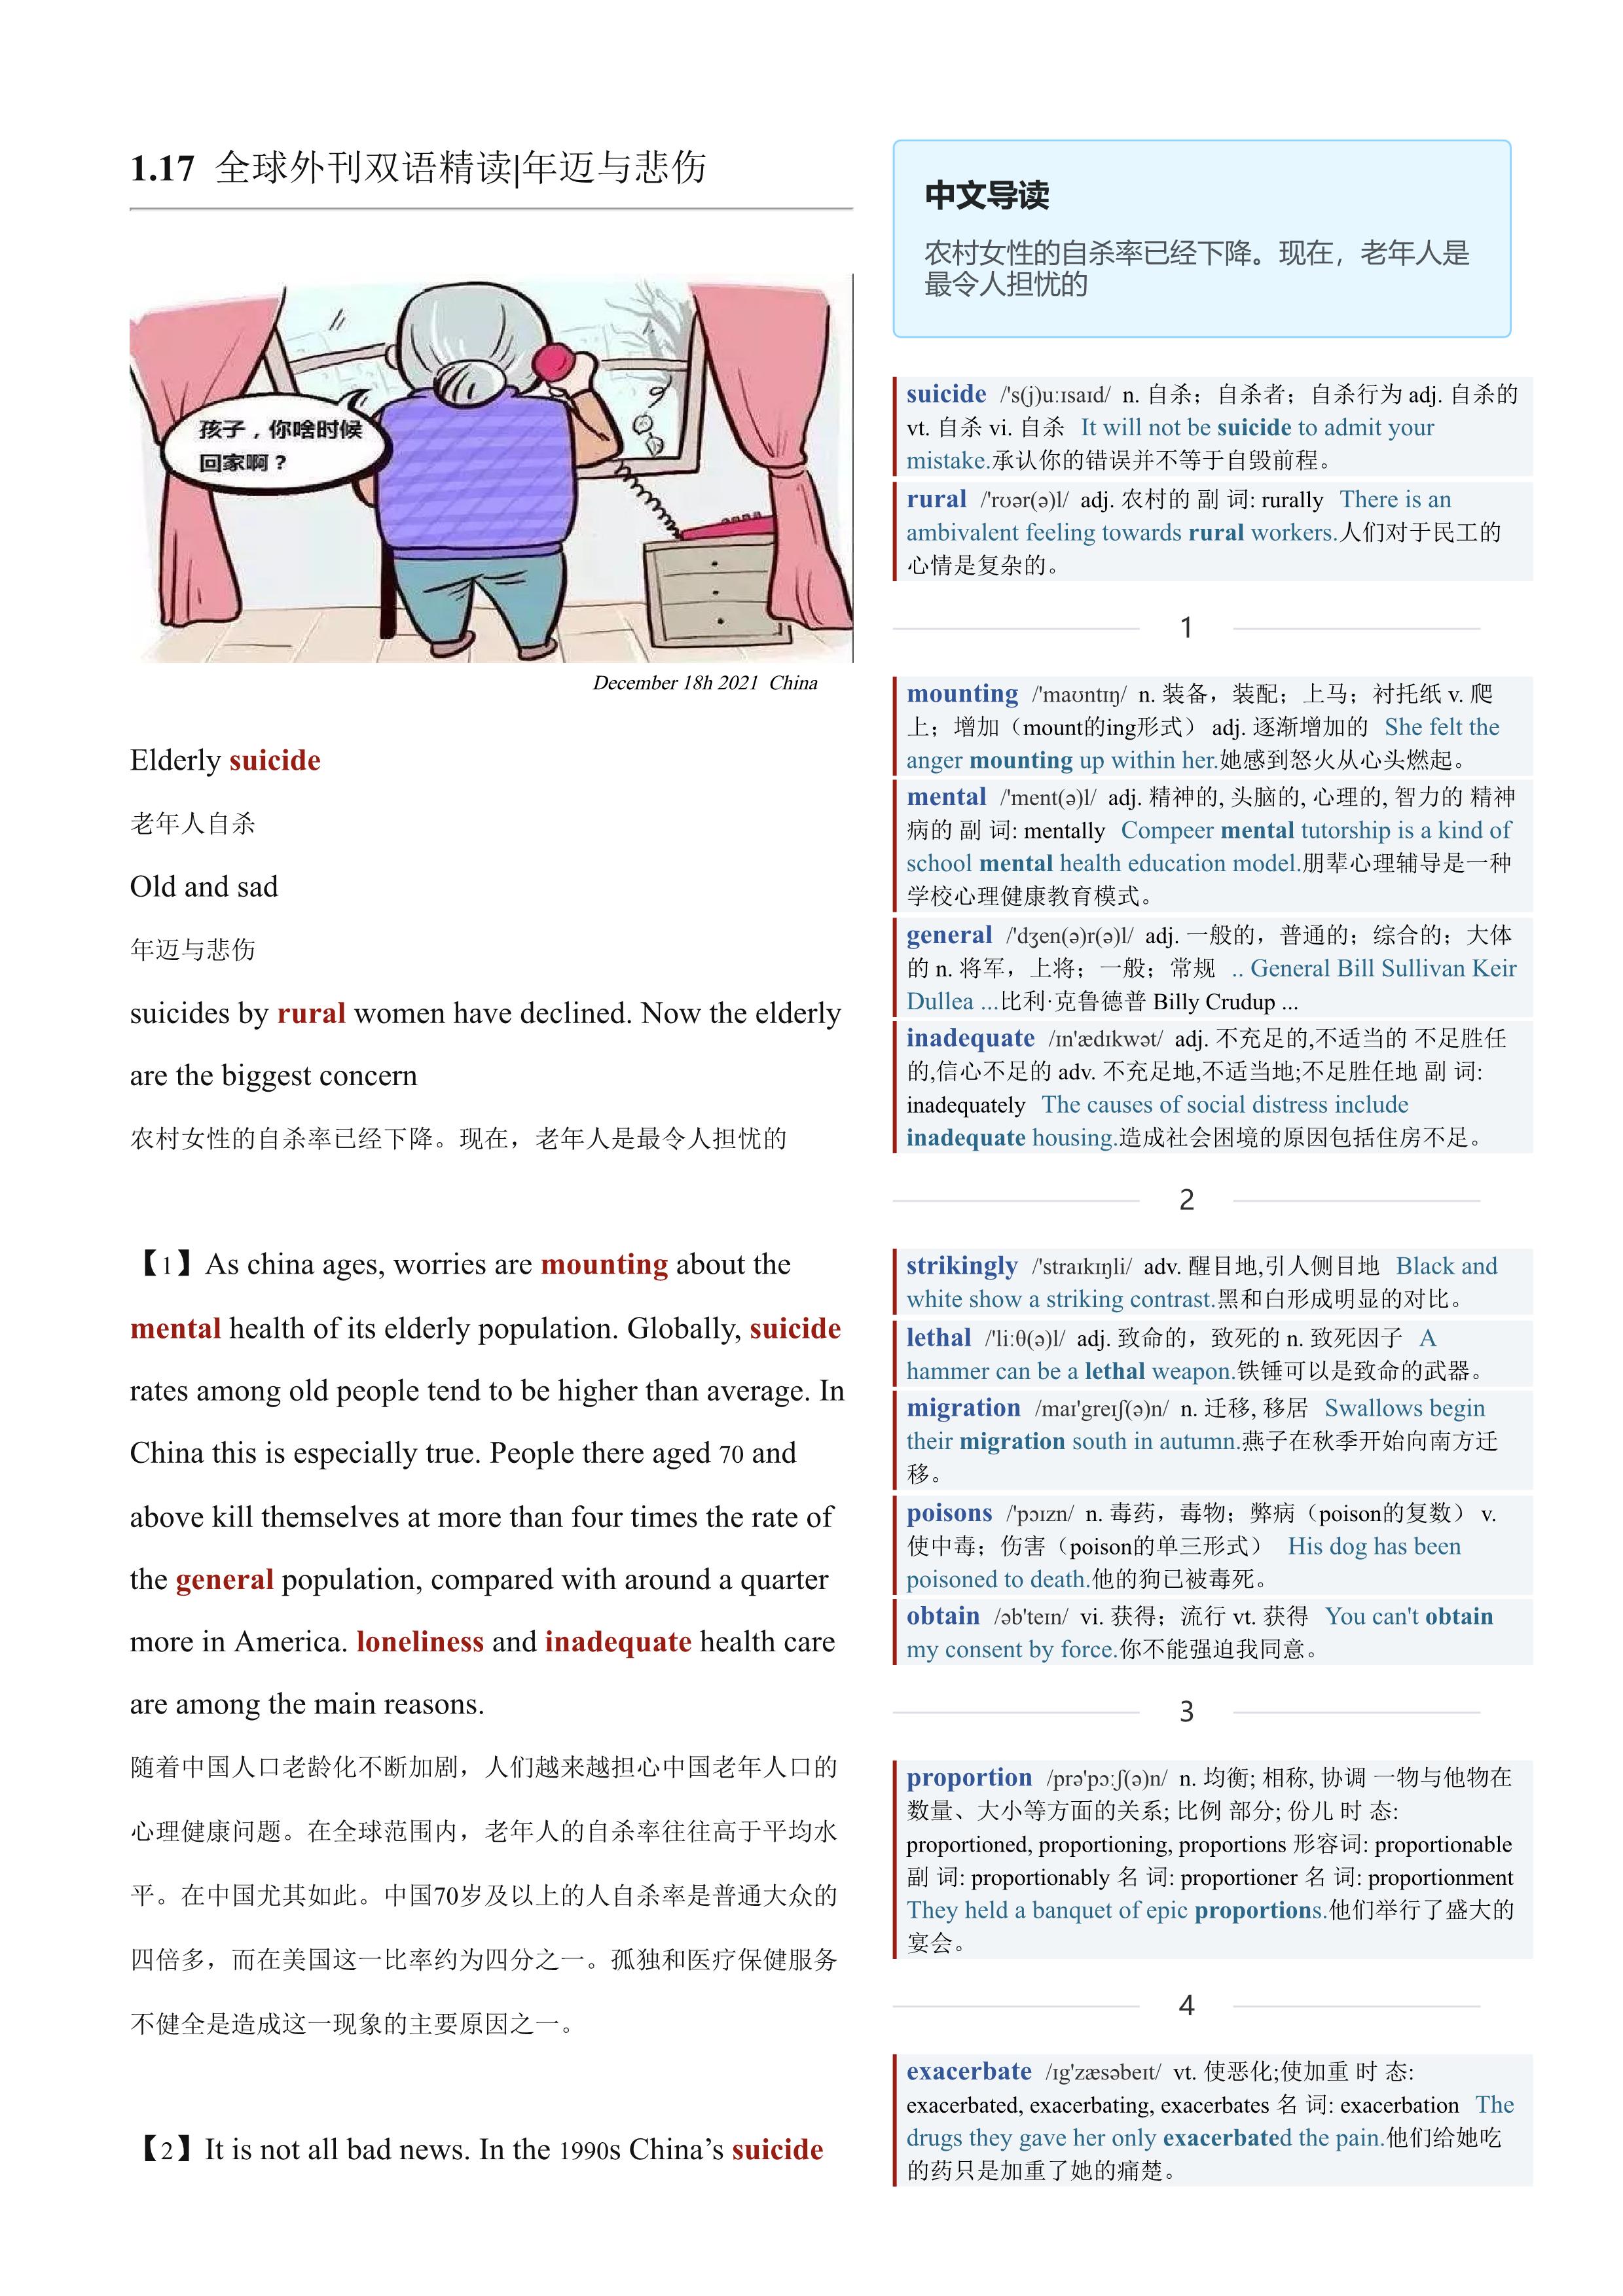 2022.01.17 经济学人双语精读丨年迈与悲伤 (.PDF/DOC/MP3)